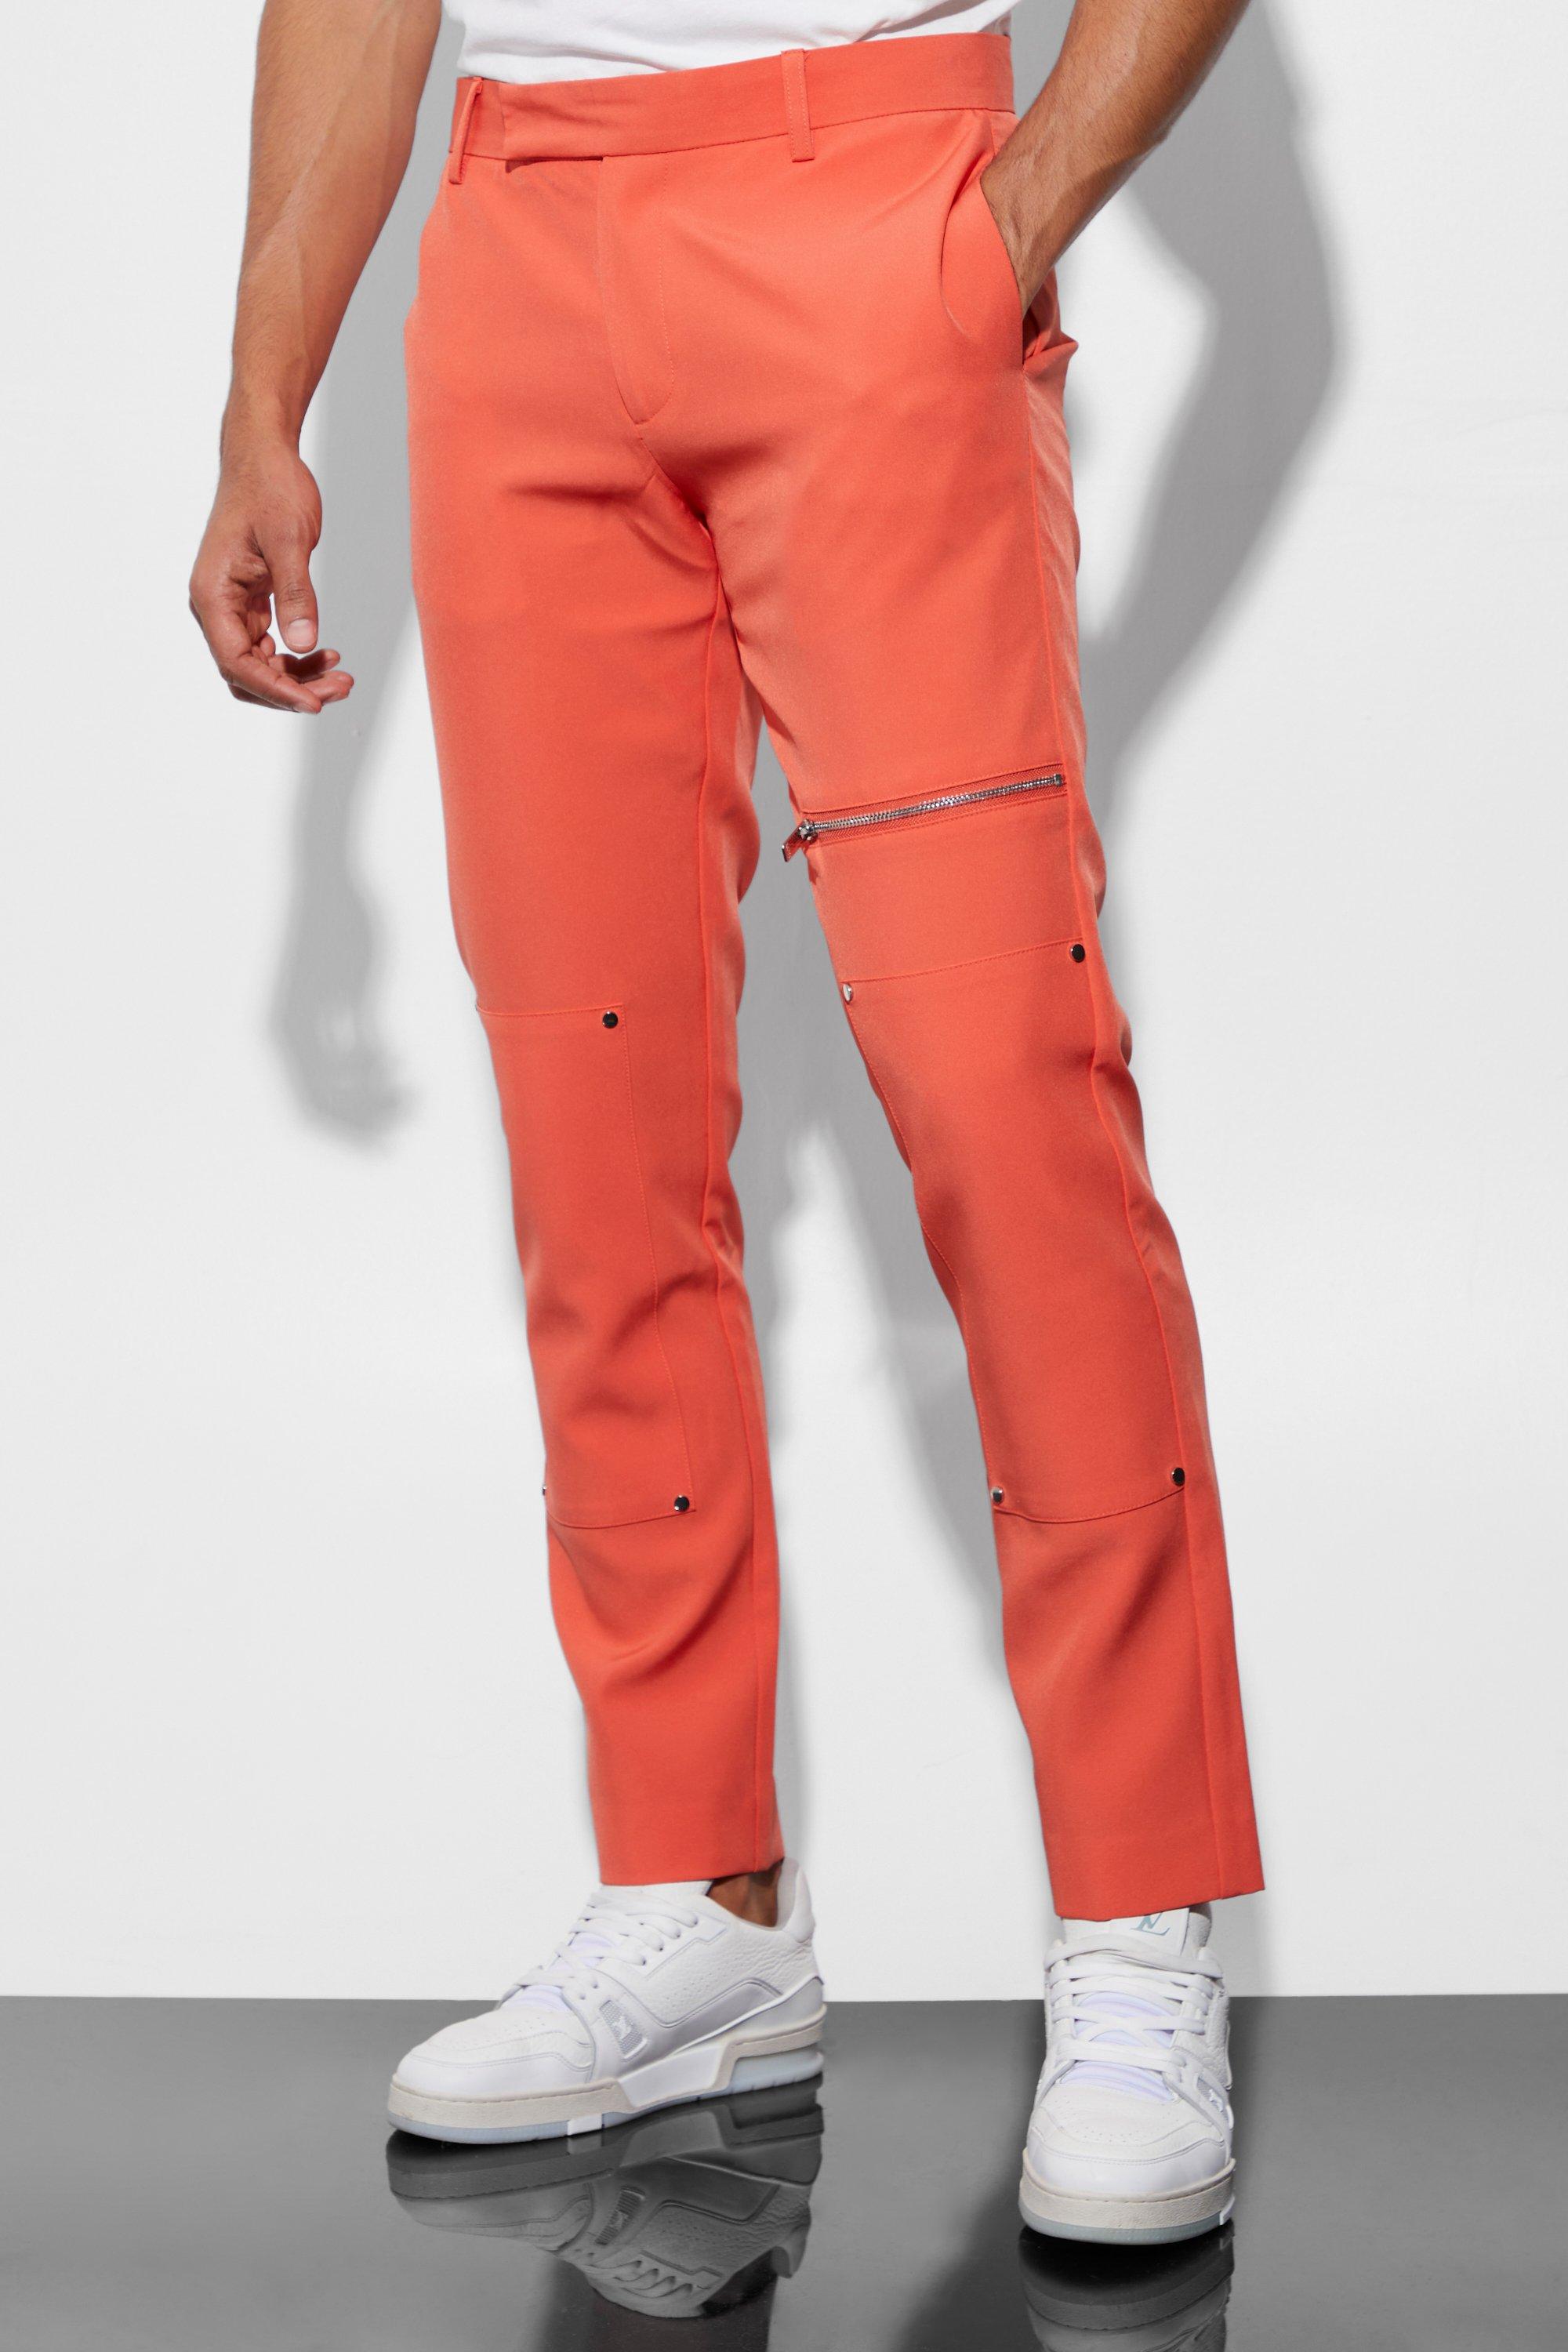 pantalon de costume skinny homme - orange - 34r, orange